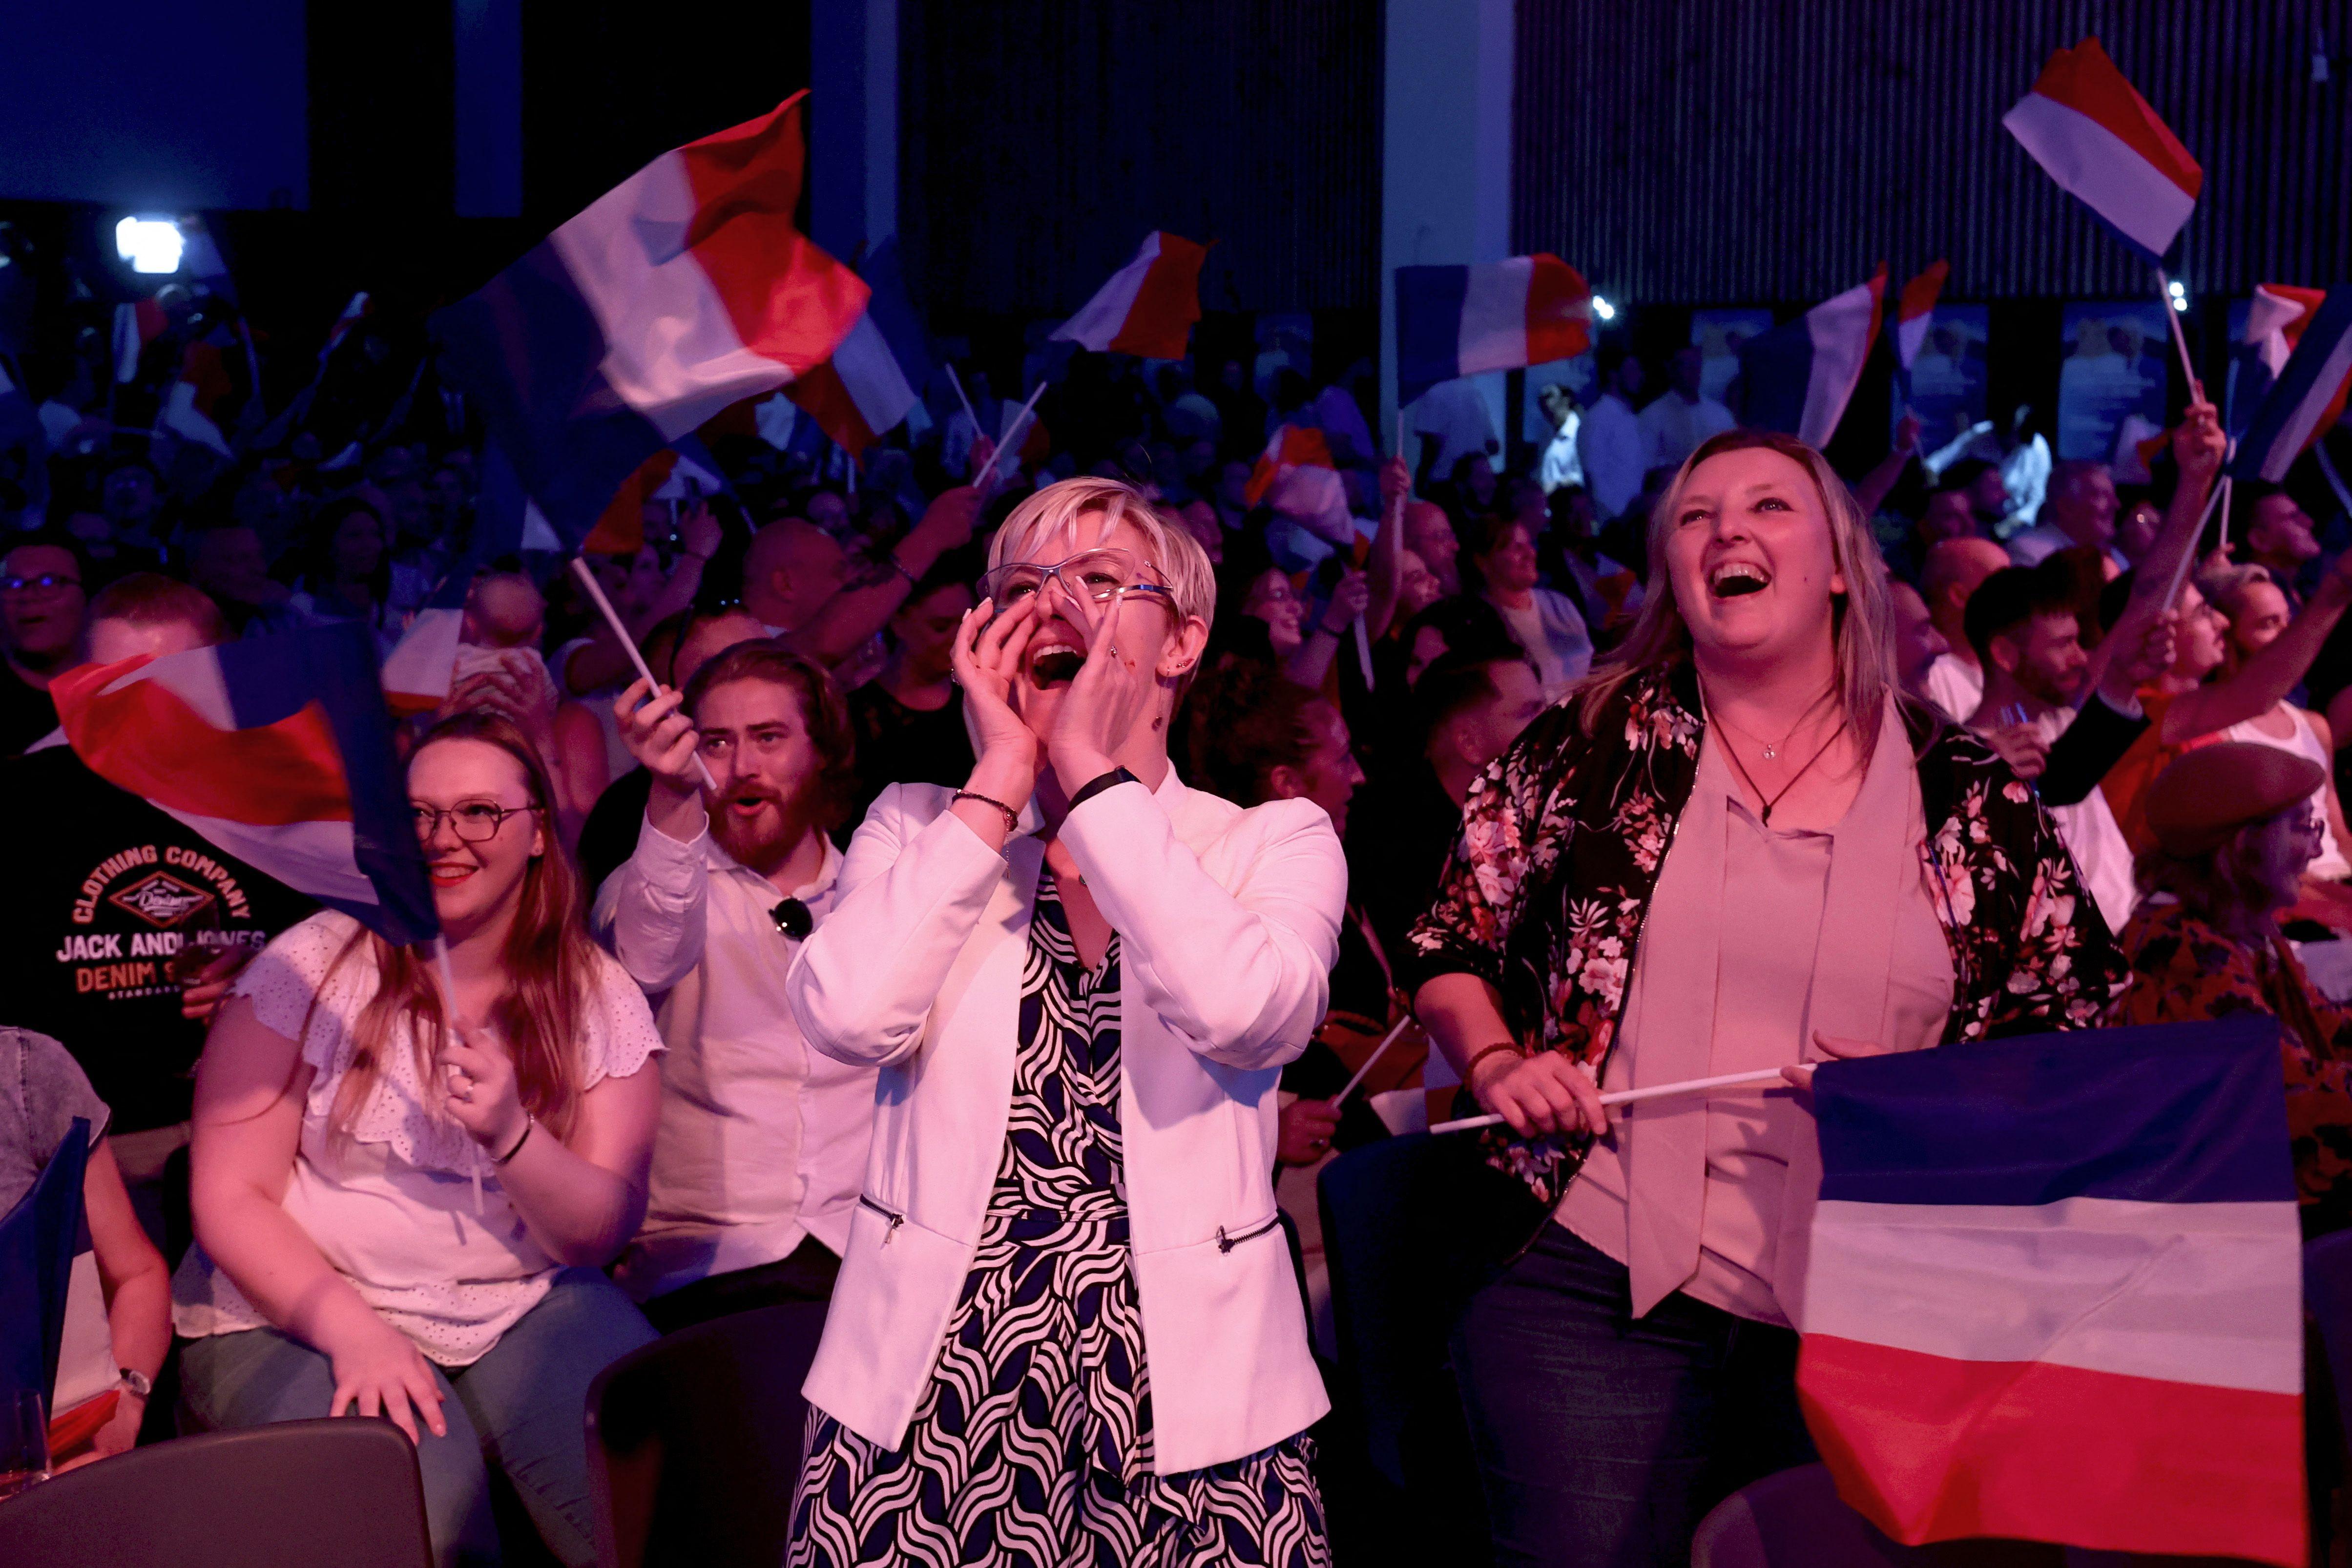 اليمين المتطرف يتصدر بفارق كبير الدورة الأولى من الانتخابات التشريعية في فرنسا، ومعسكر ماكرون يحلُّ ثالثا